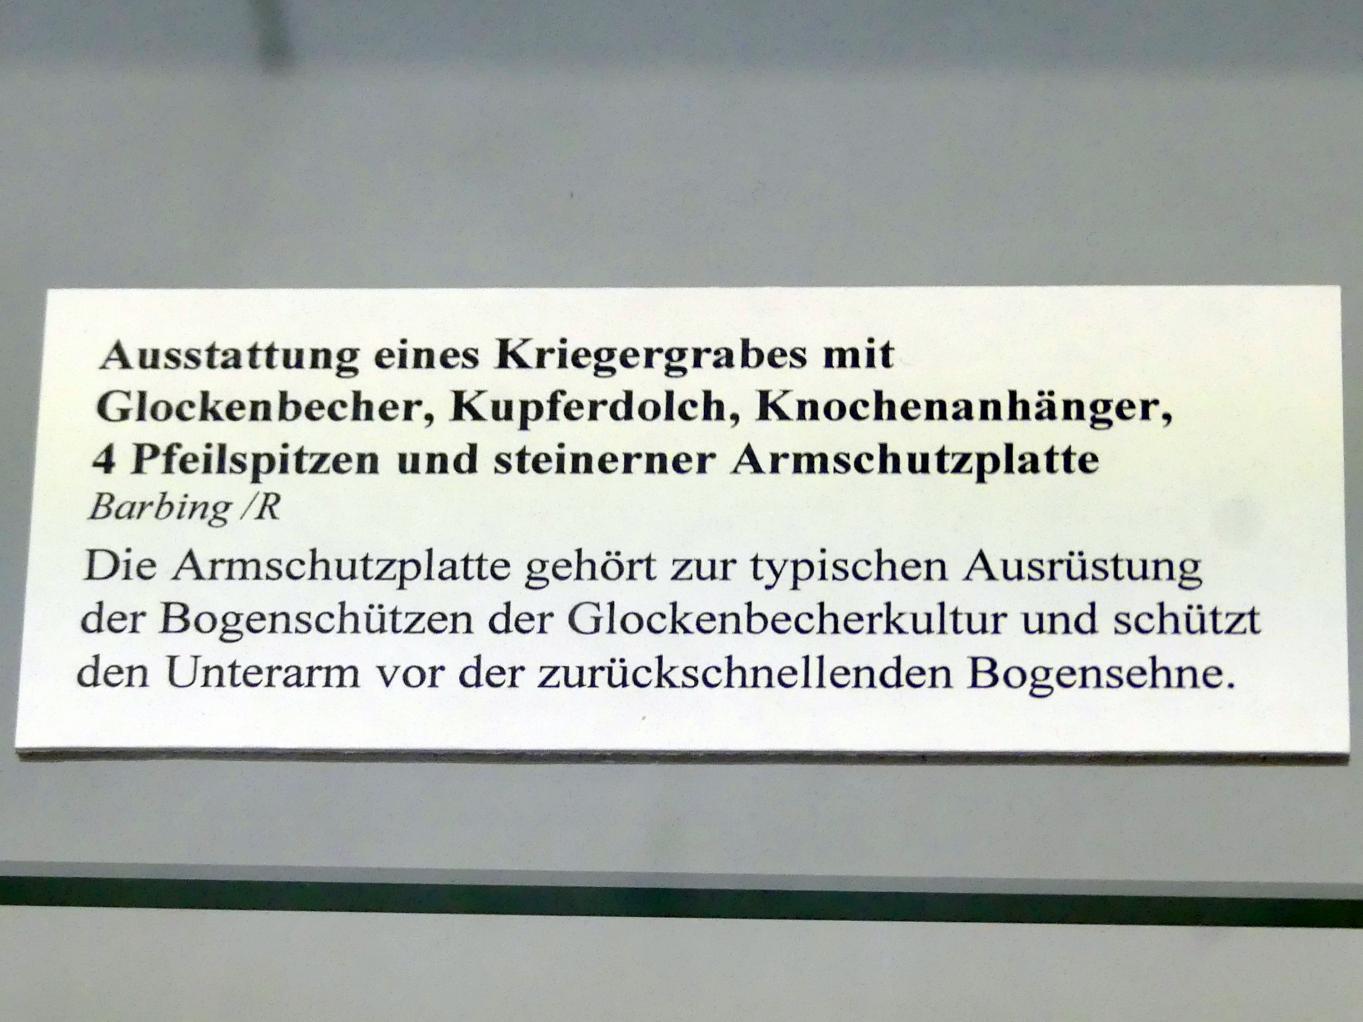 Glockenbecher, Endneolithikum, 2800 - 1700 v. Chr., Bild 2/2